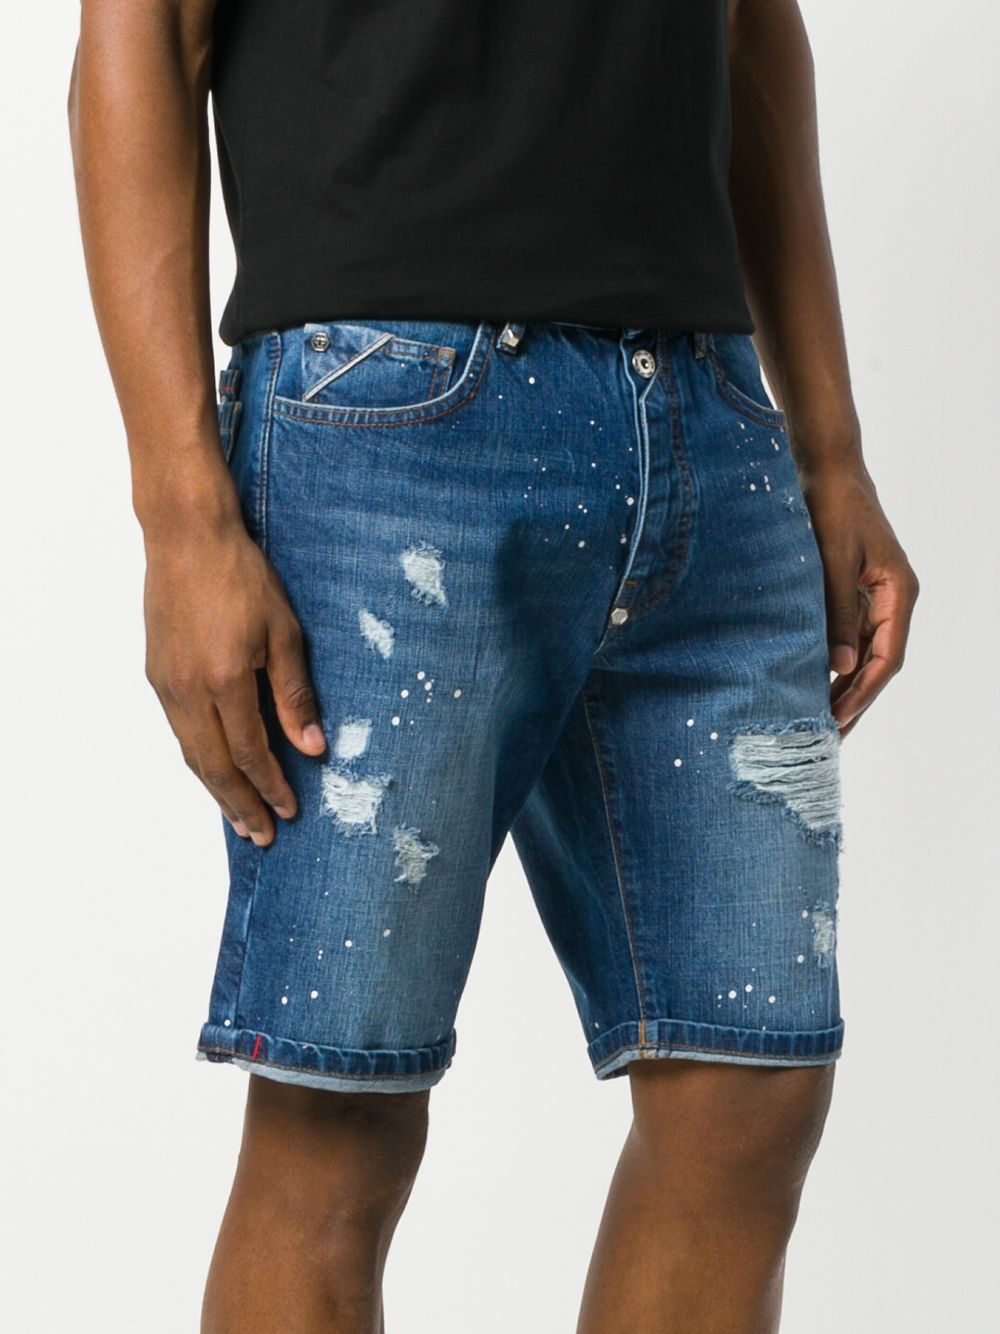 фото Philipp plein джинсовые шорты с потертой отделкой